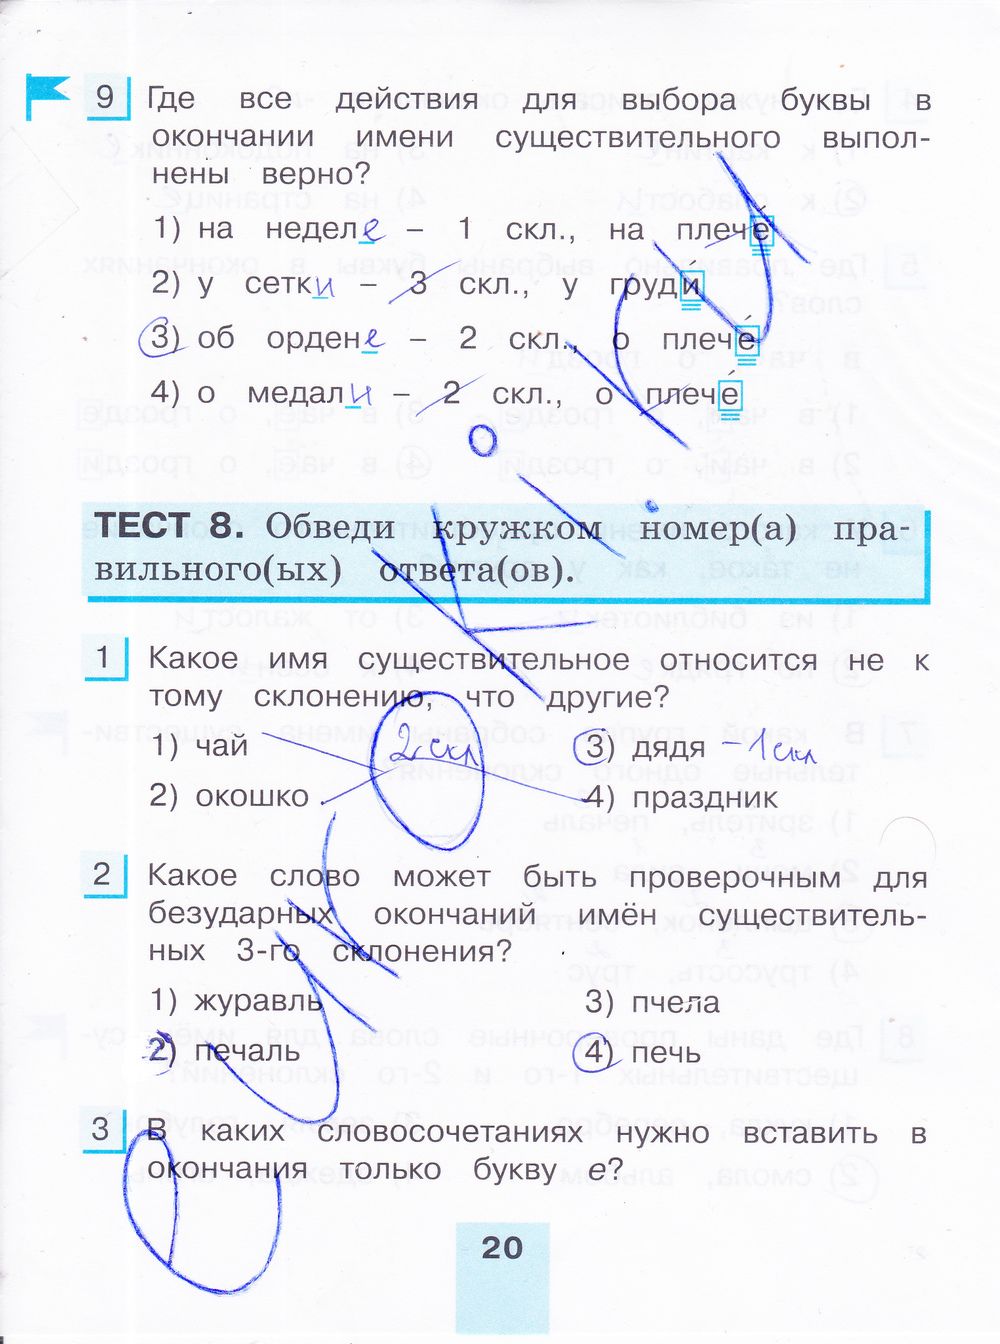 ГДЗ Русский язык 4 класс - стр. 20